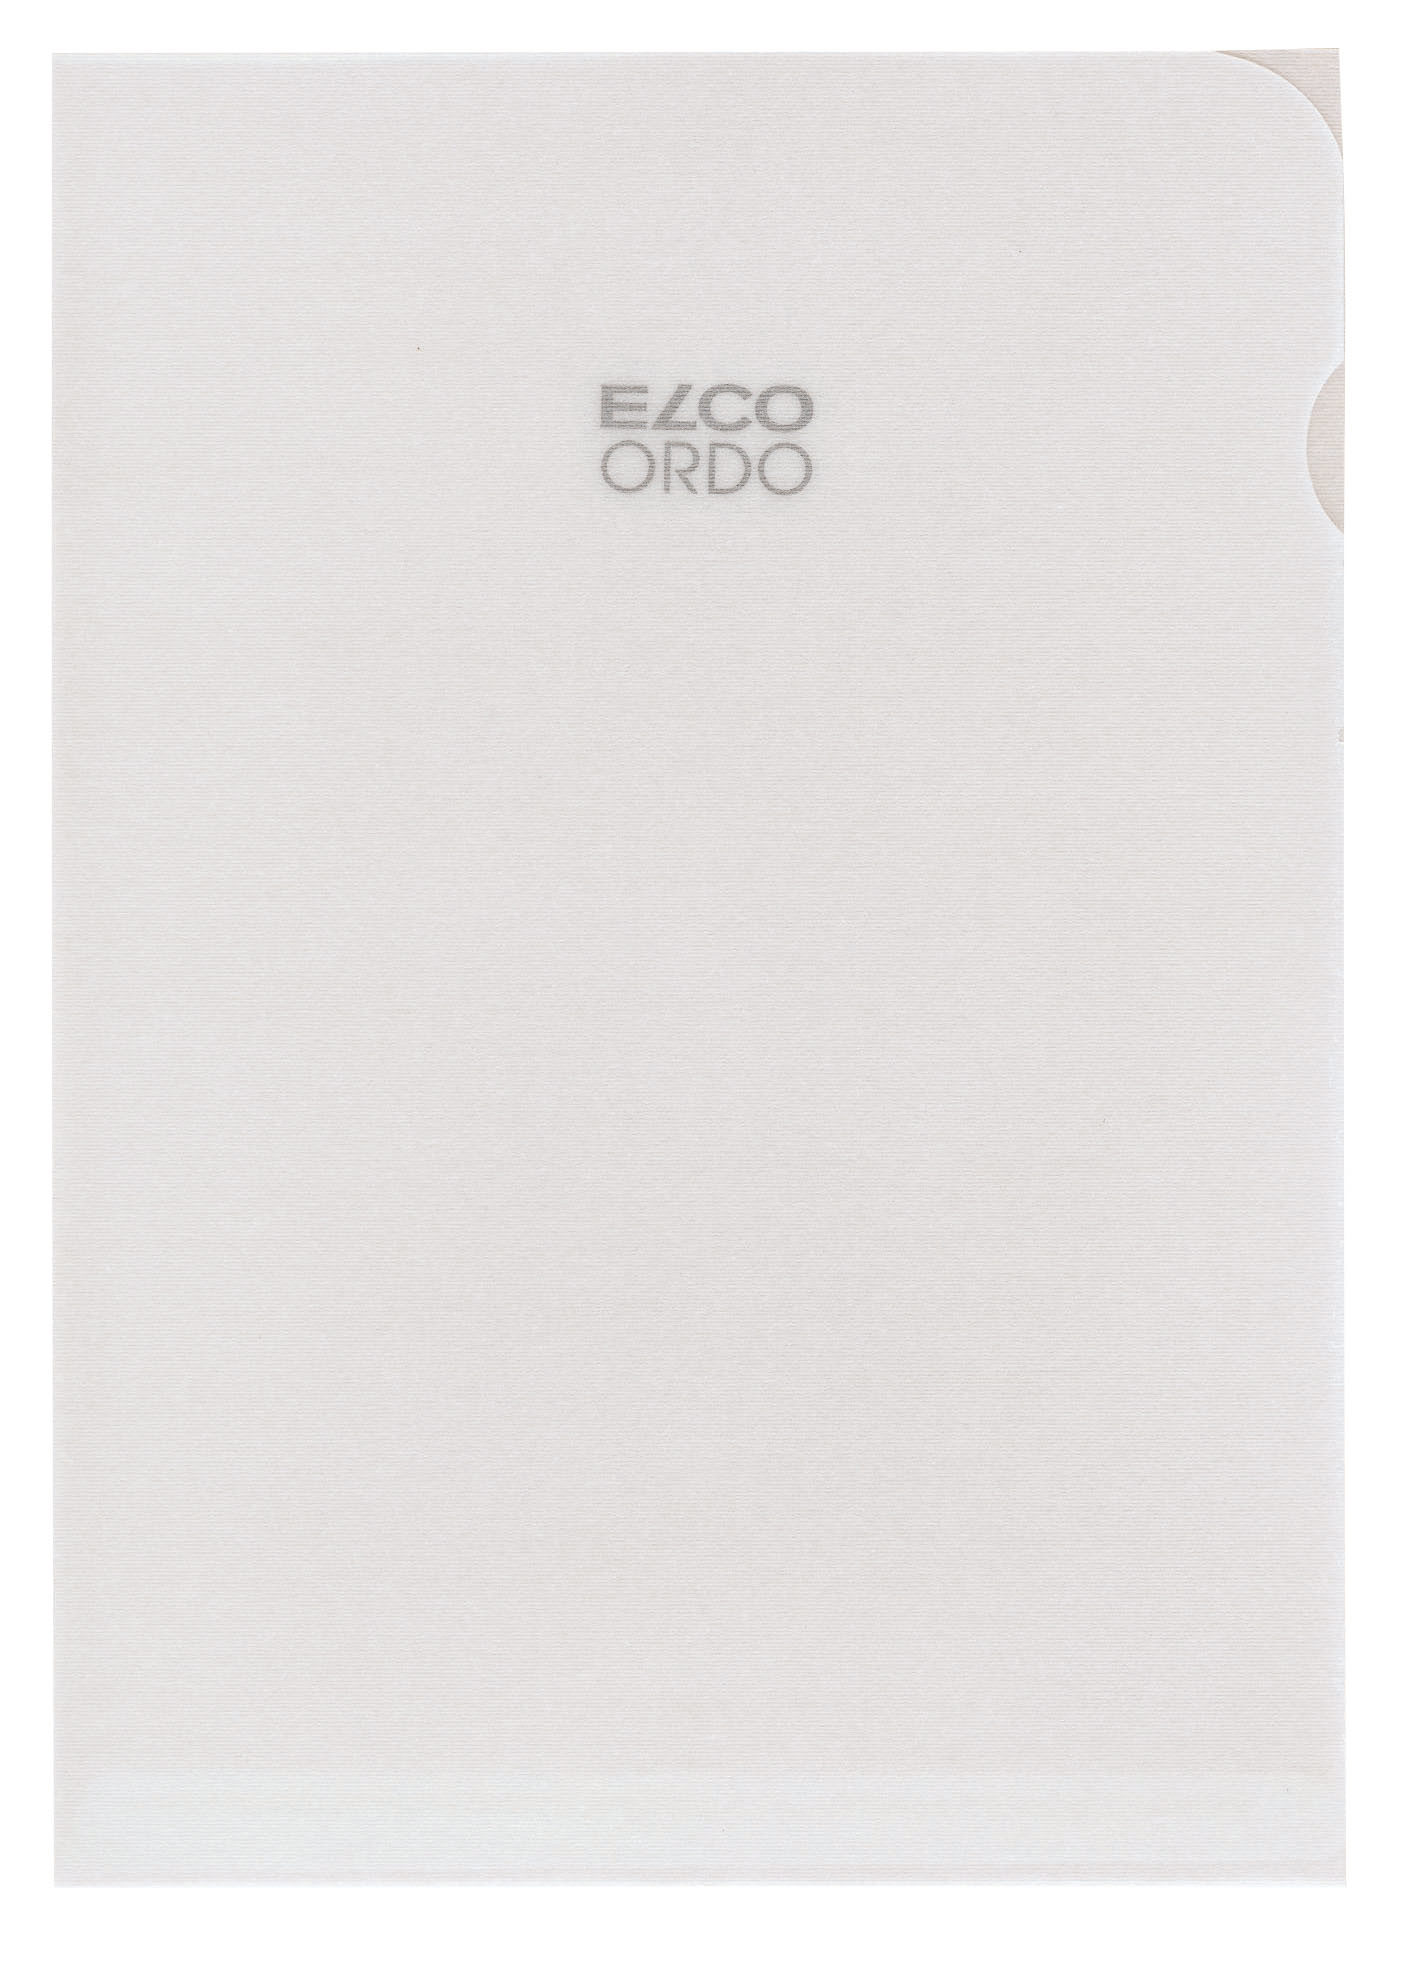 ELCO Dossier Ordo A4 29490.14 transparent, blanc 100 pièces